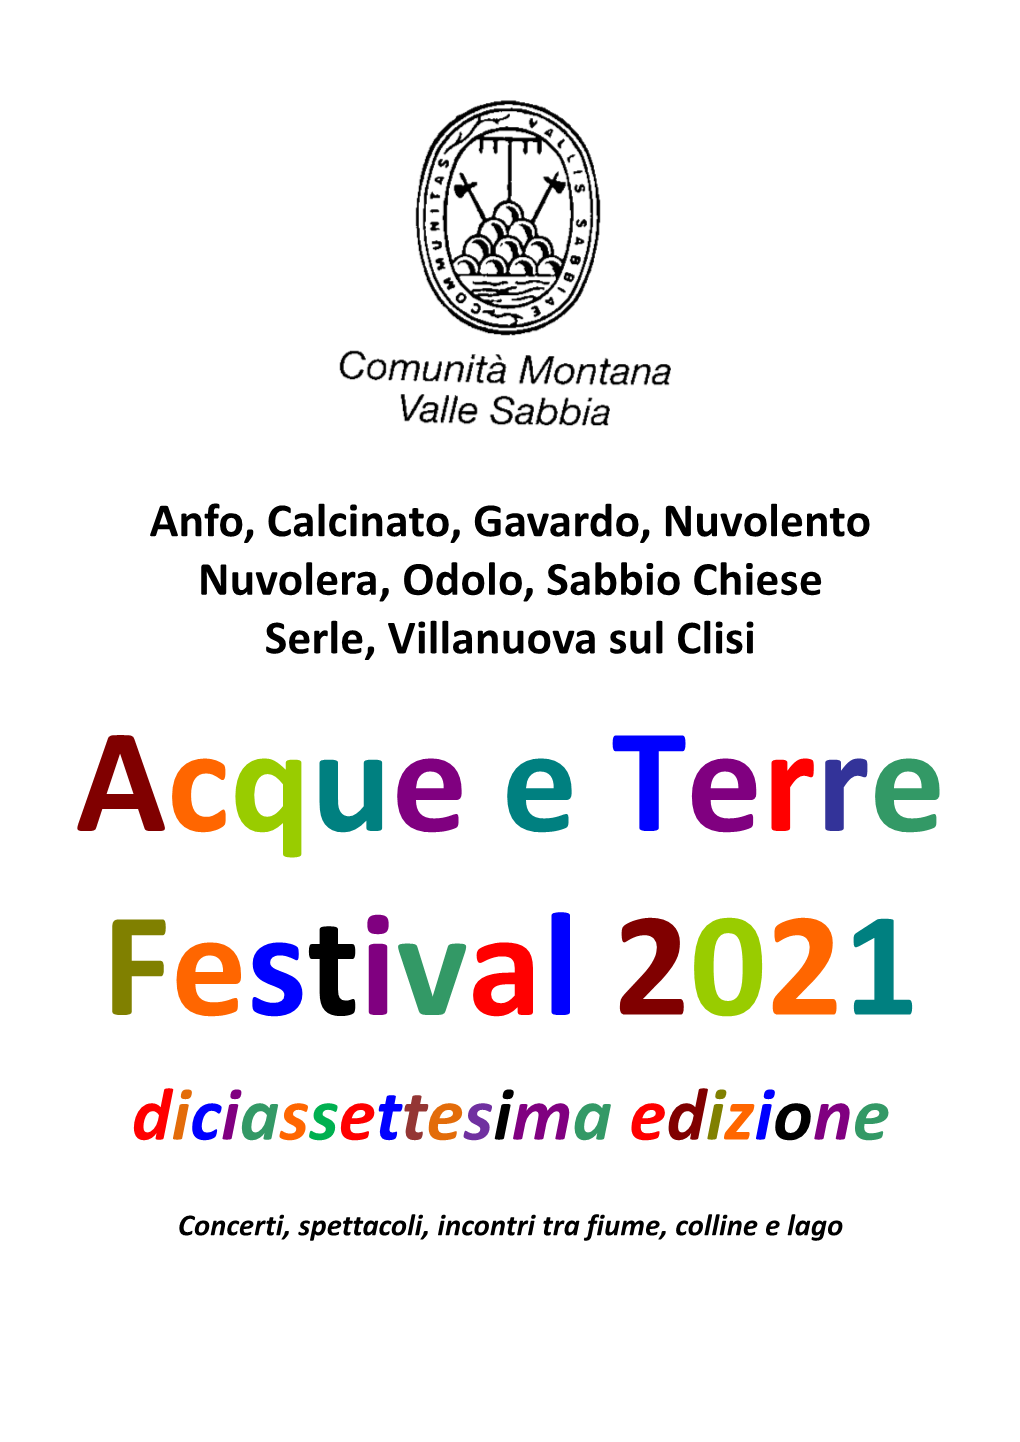 Festival 2021